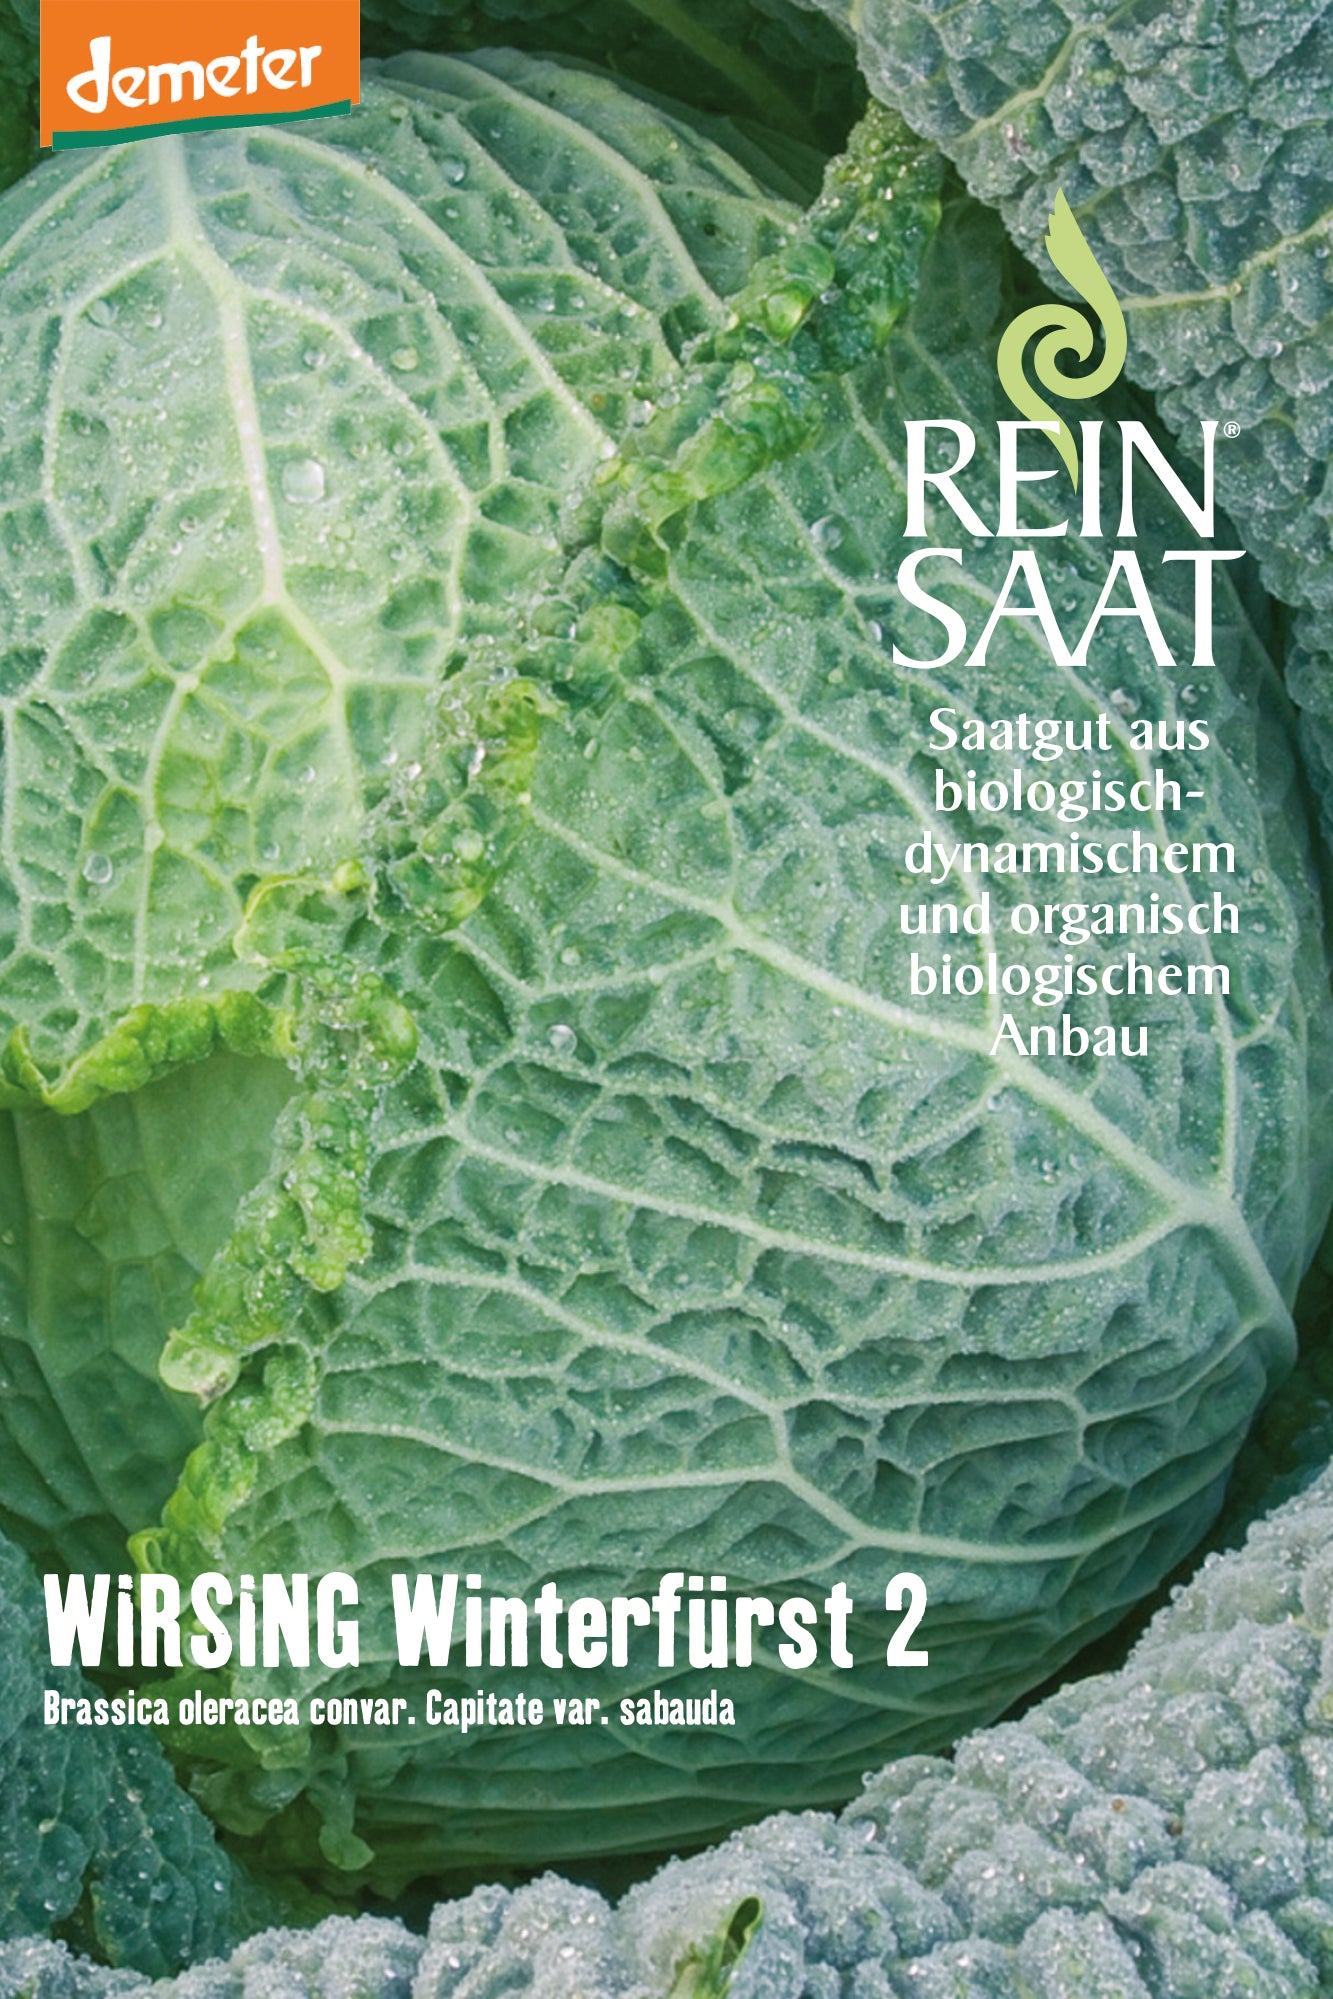 Wirsing Winterfürst 2 | BIO Wirsingsamen von Reinsaat